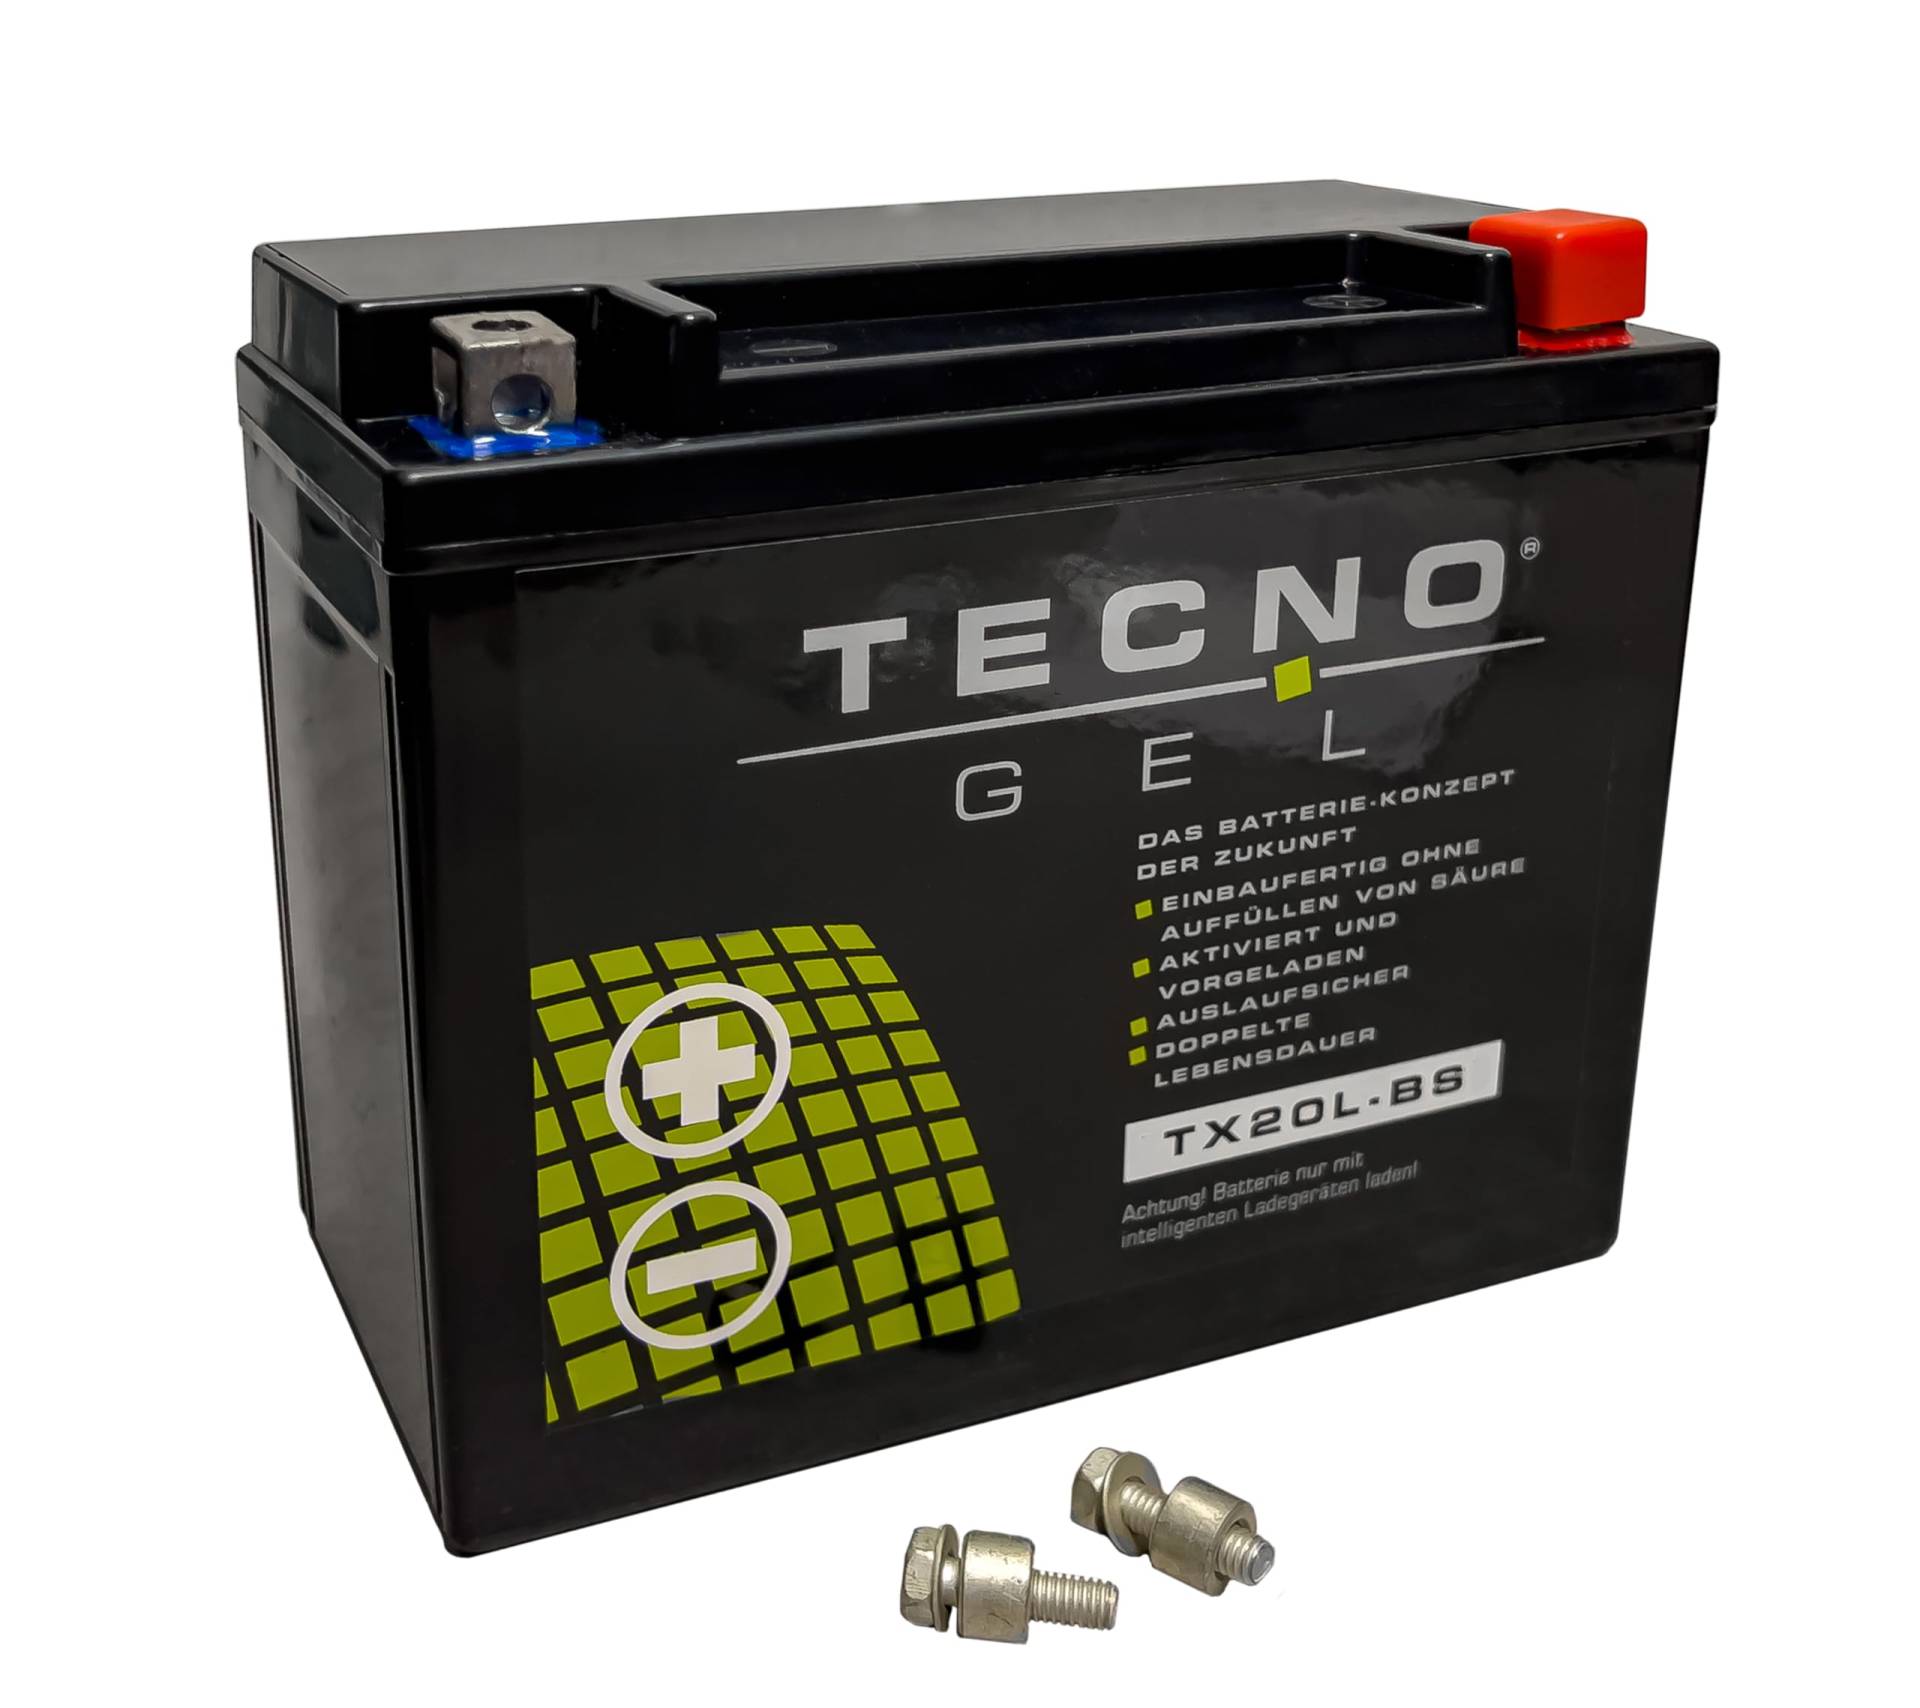 TECNO-GEL Motorrad-Batterie für YTX20L-BS für INDIAN Chief, Chieftain, Roadmaster, Springfield 1800 2014-2018, 12V Gel-Batterie 20Ah (DIN 82000), 175x87x155 mm von Wirth-Federn